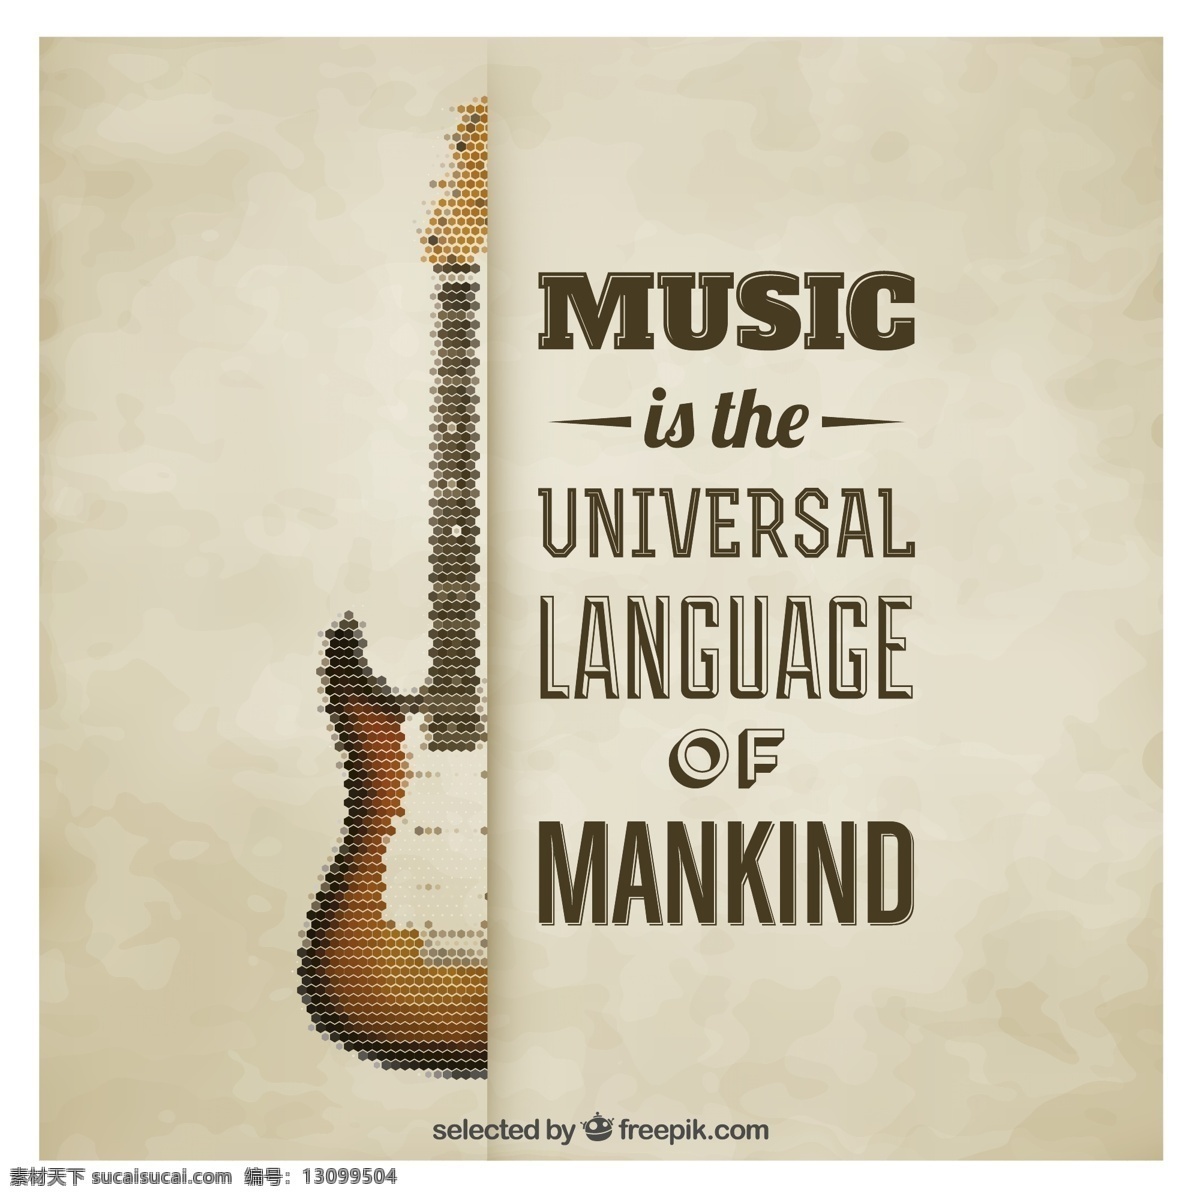 复古 像素 吉他 海报 通用 语言 世界类 音乐 矢量 高清图片